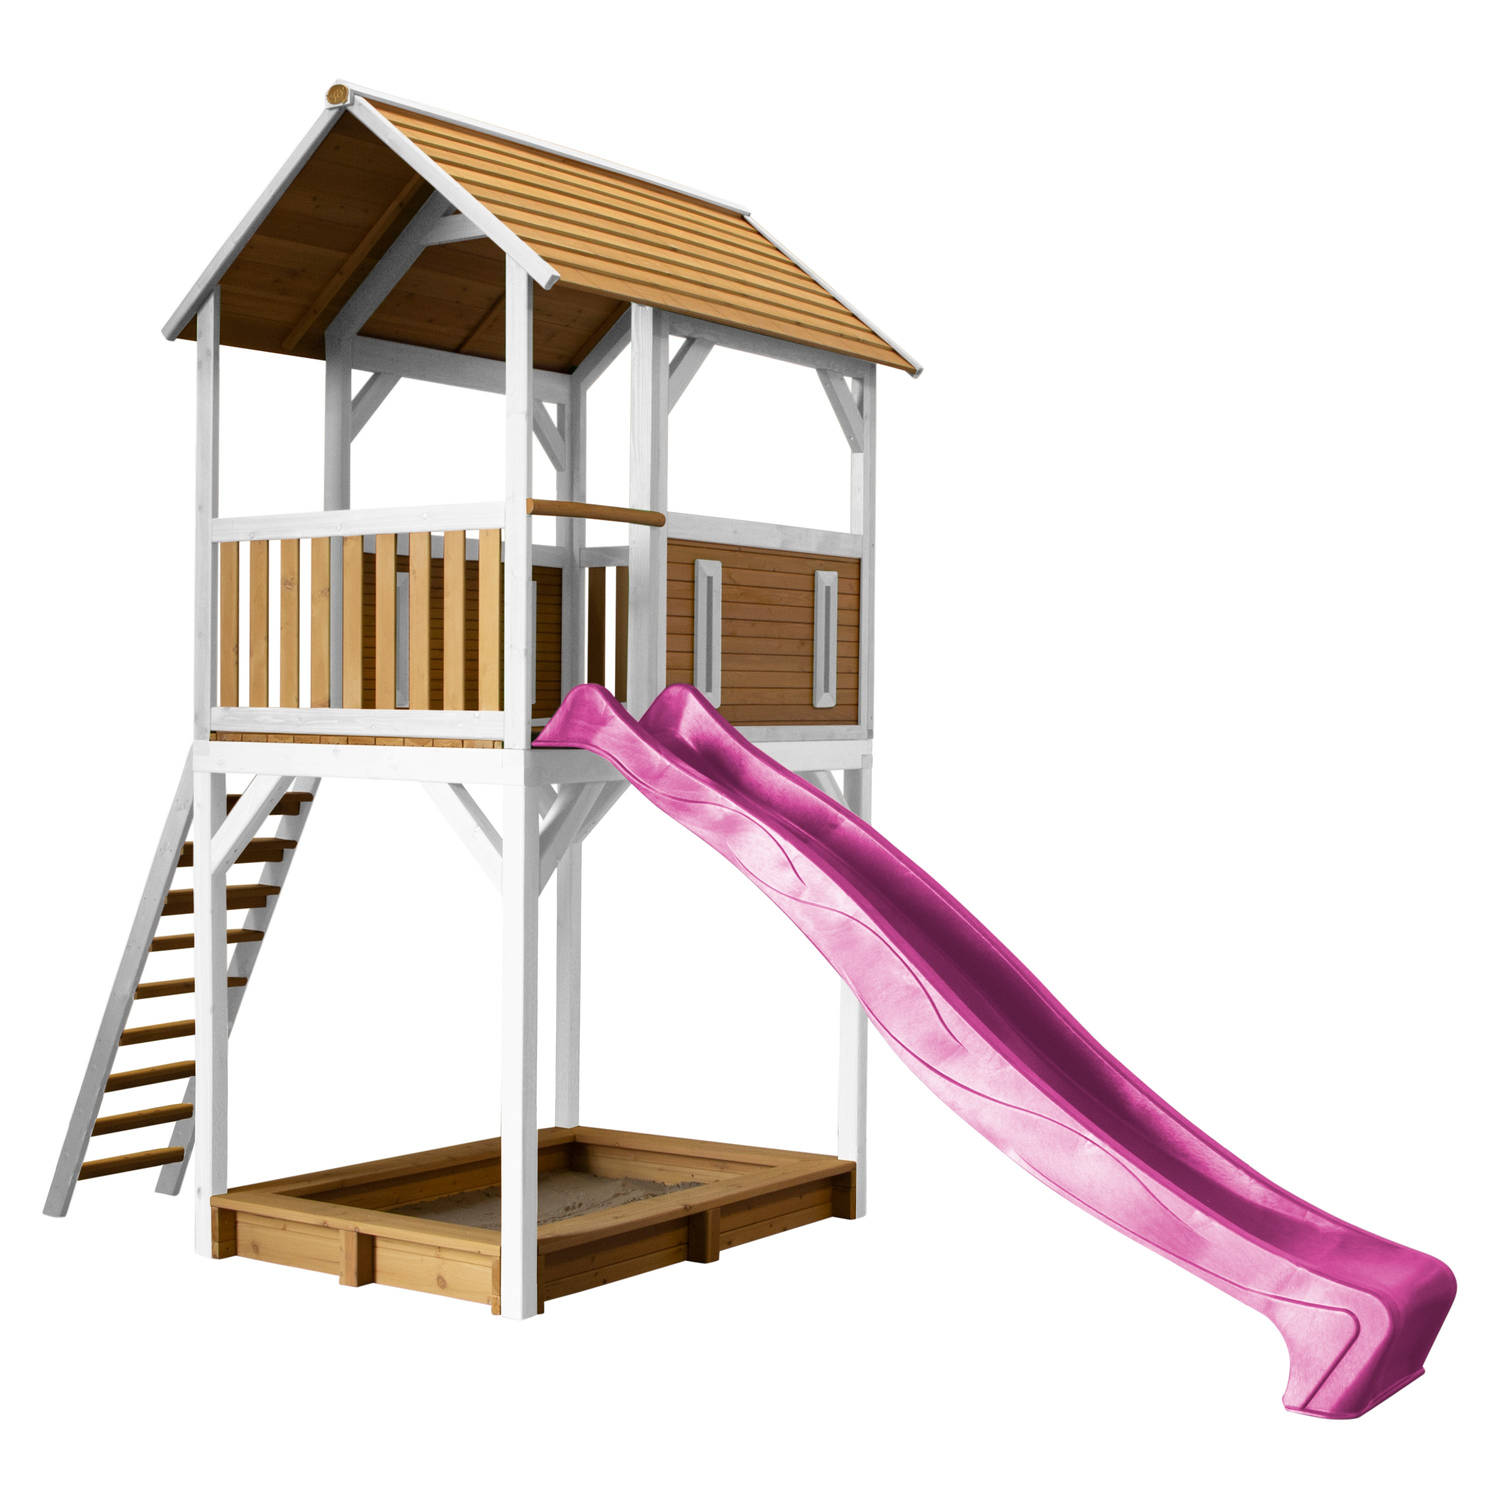 AXI Dory Speelhuis op palen, zandbak & paarse glijbaan Speelhuisje voor de tuin / buiten in bruin & wit van FSC hout